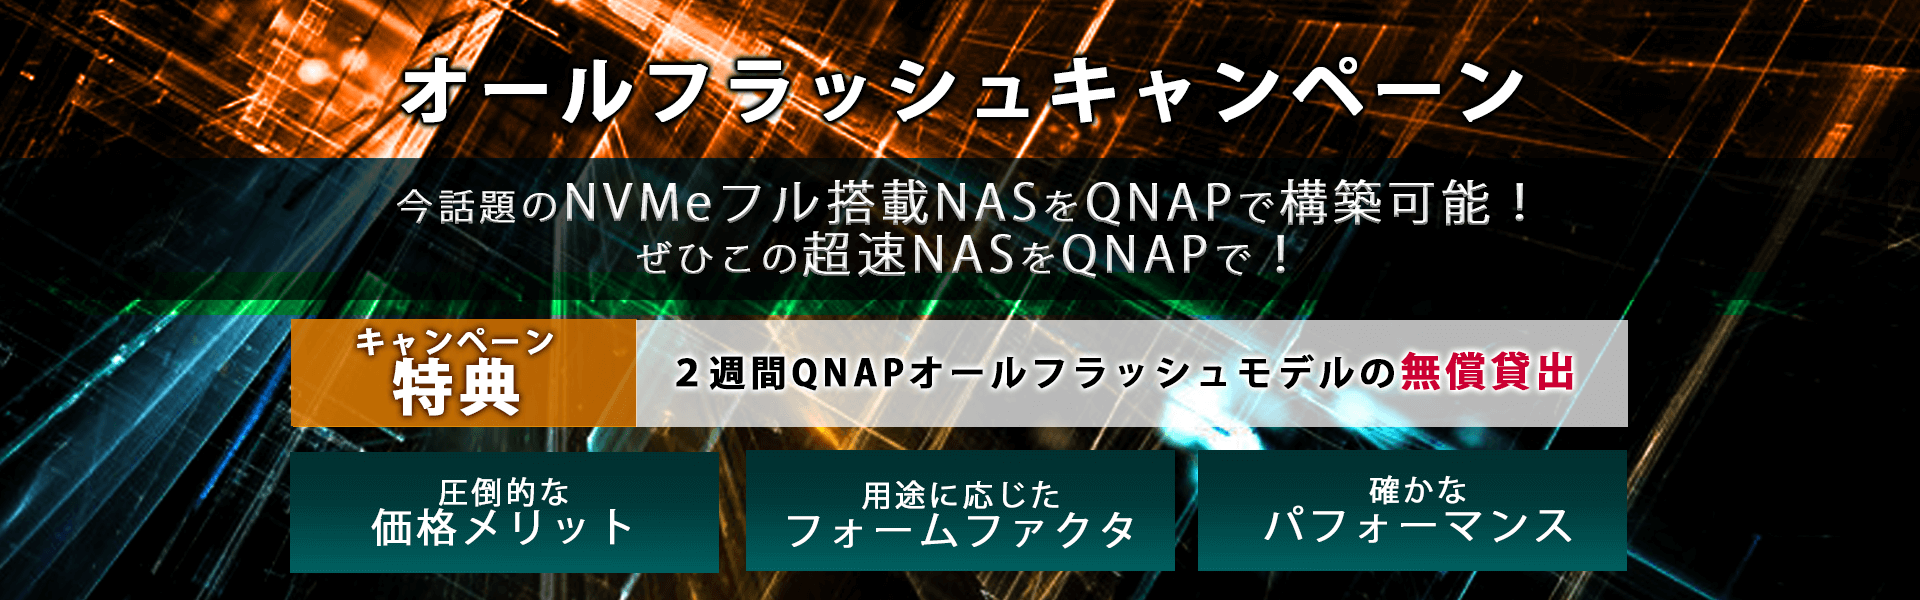 オールフラッシュキャンペーン　今話題のNVMeフル搭載NASをQNAPで構築可能！ぜひこの超速NASをQNAPで！キャンペーン特典：2週間QNAPオールフラッシュモデルの無償貸出。圧倒的なメリット、用途に応じたフォームファクタ、確かなパフォーマンス！